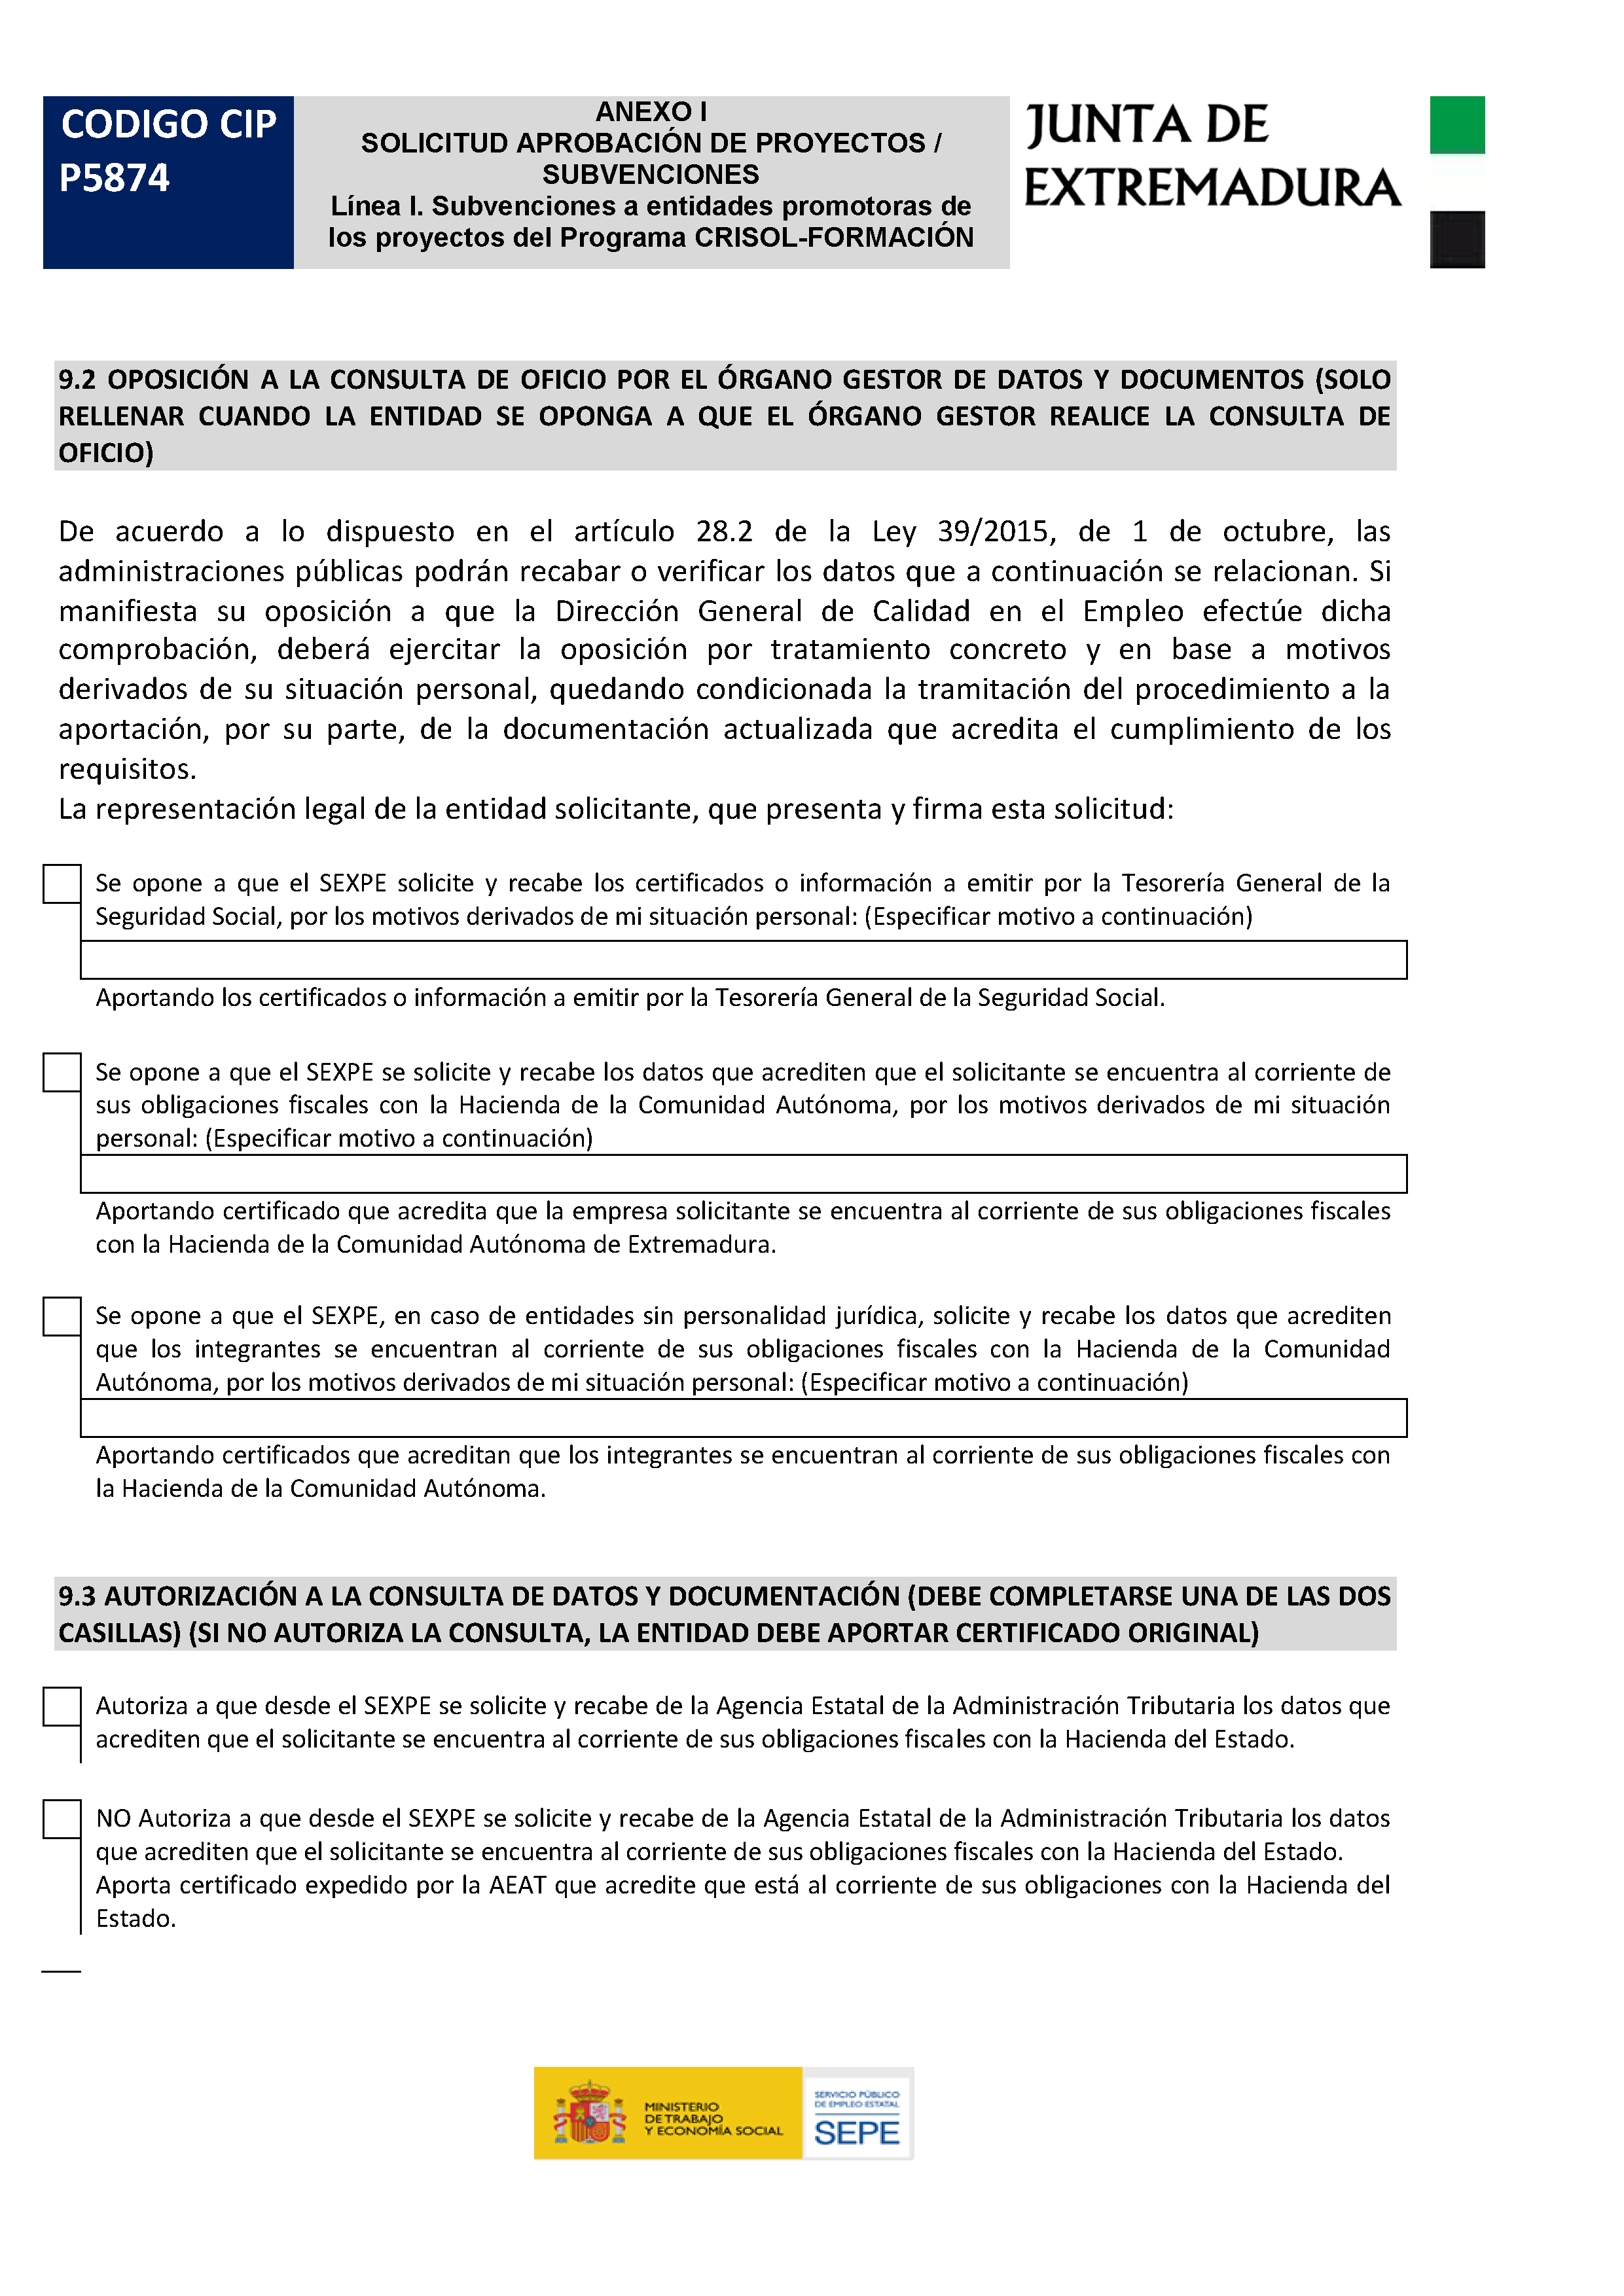 ANEXO SOLICITUD APROVACION DE PROYECTOS / SUBVENCIONES Pag 4